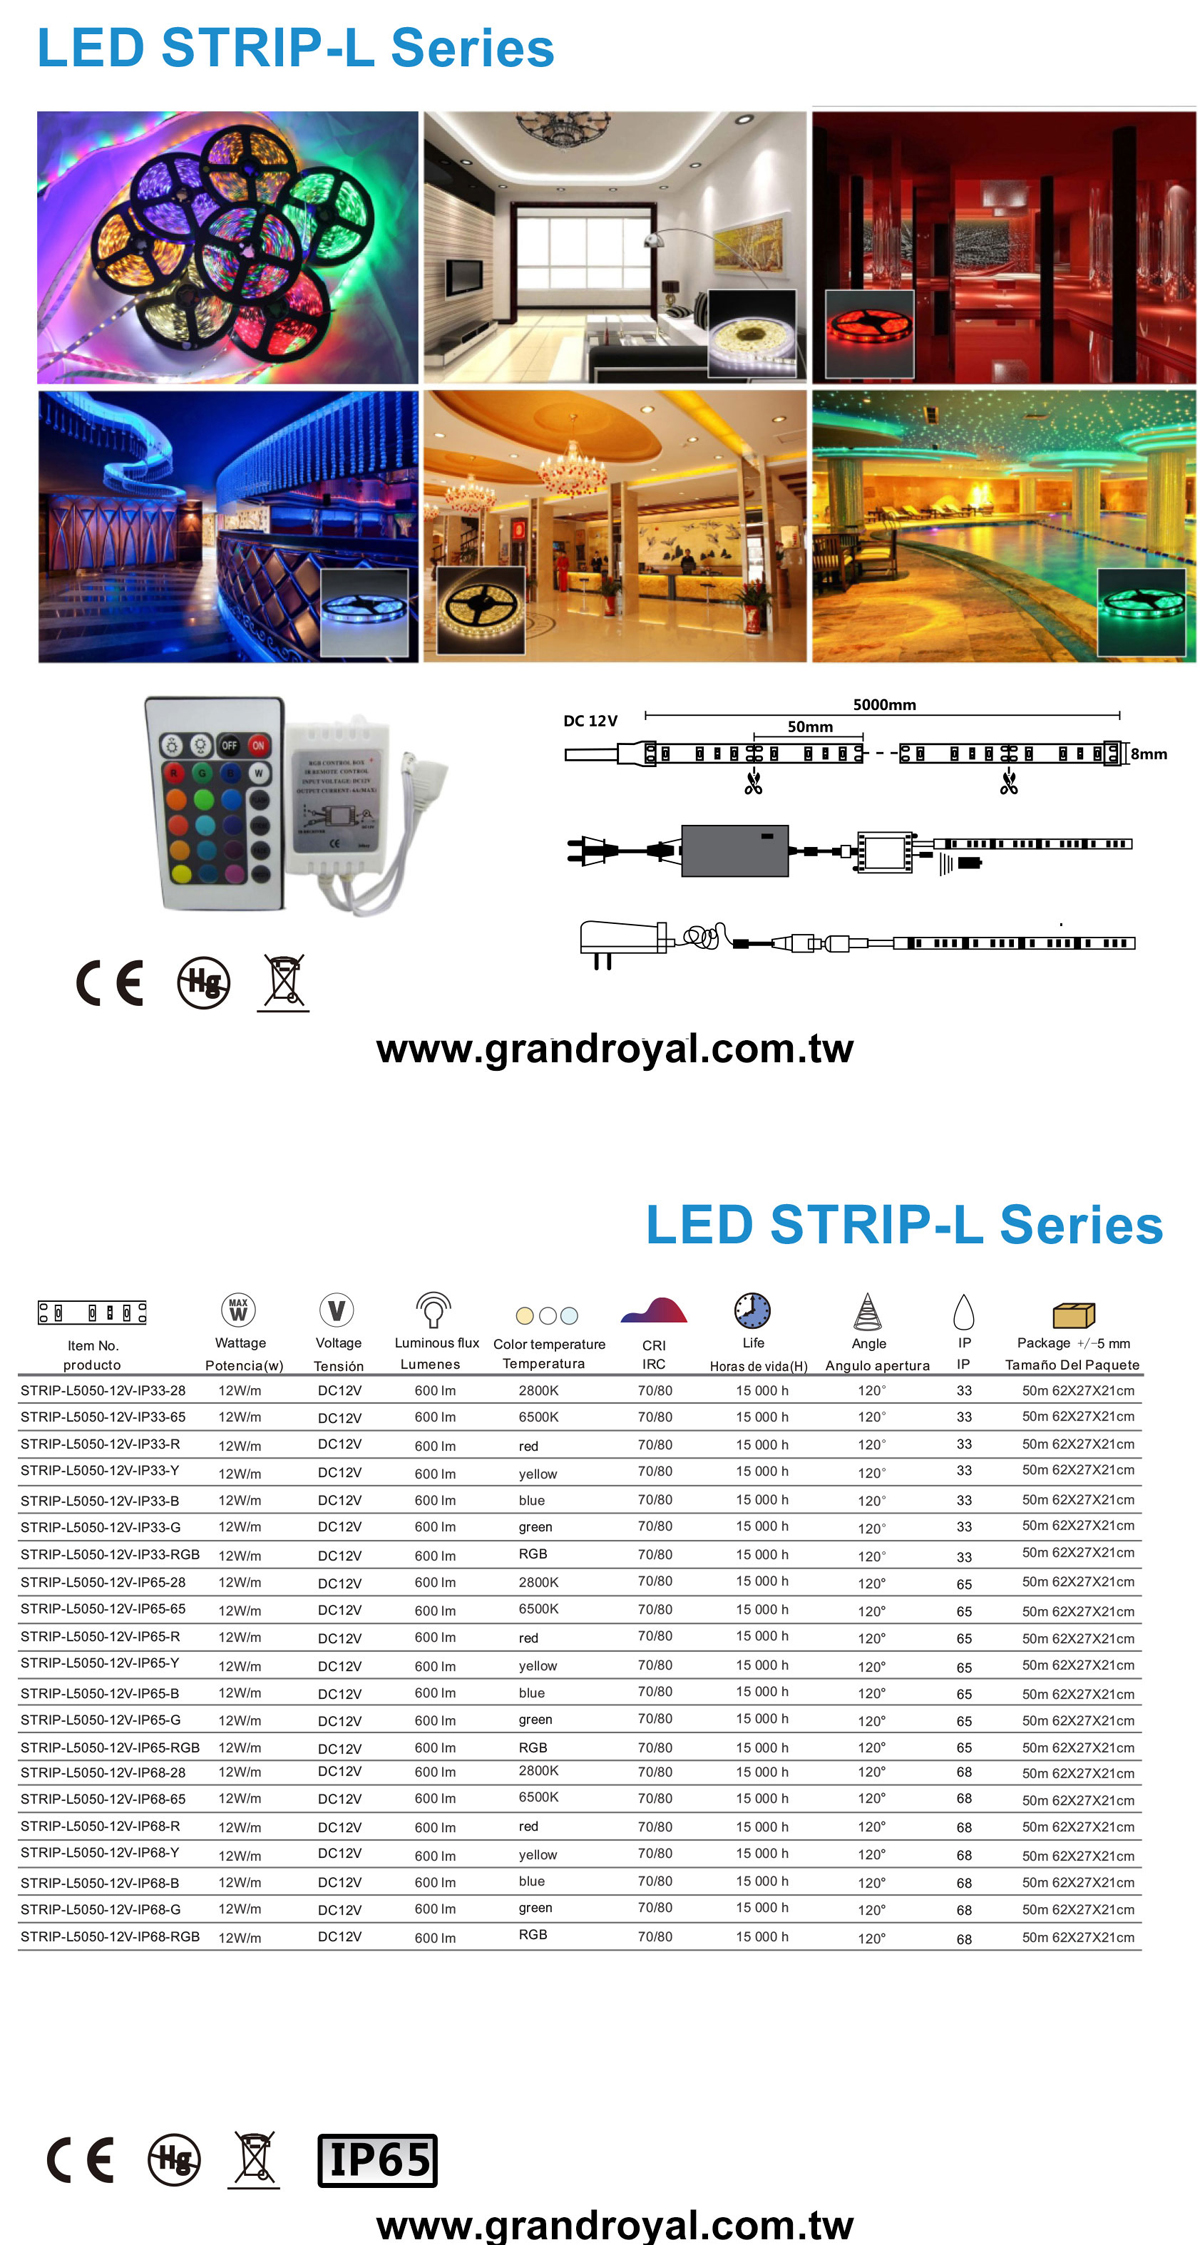 LED STRIP-L Series